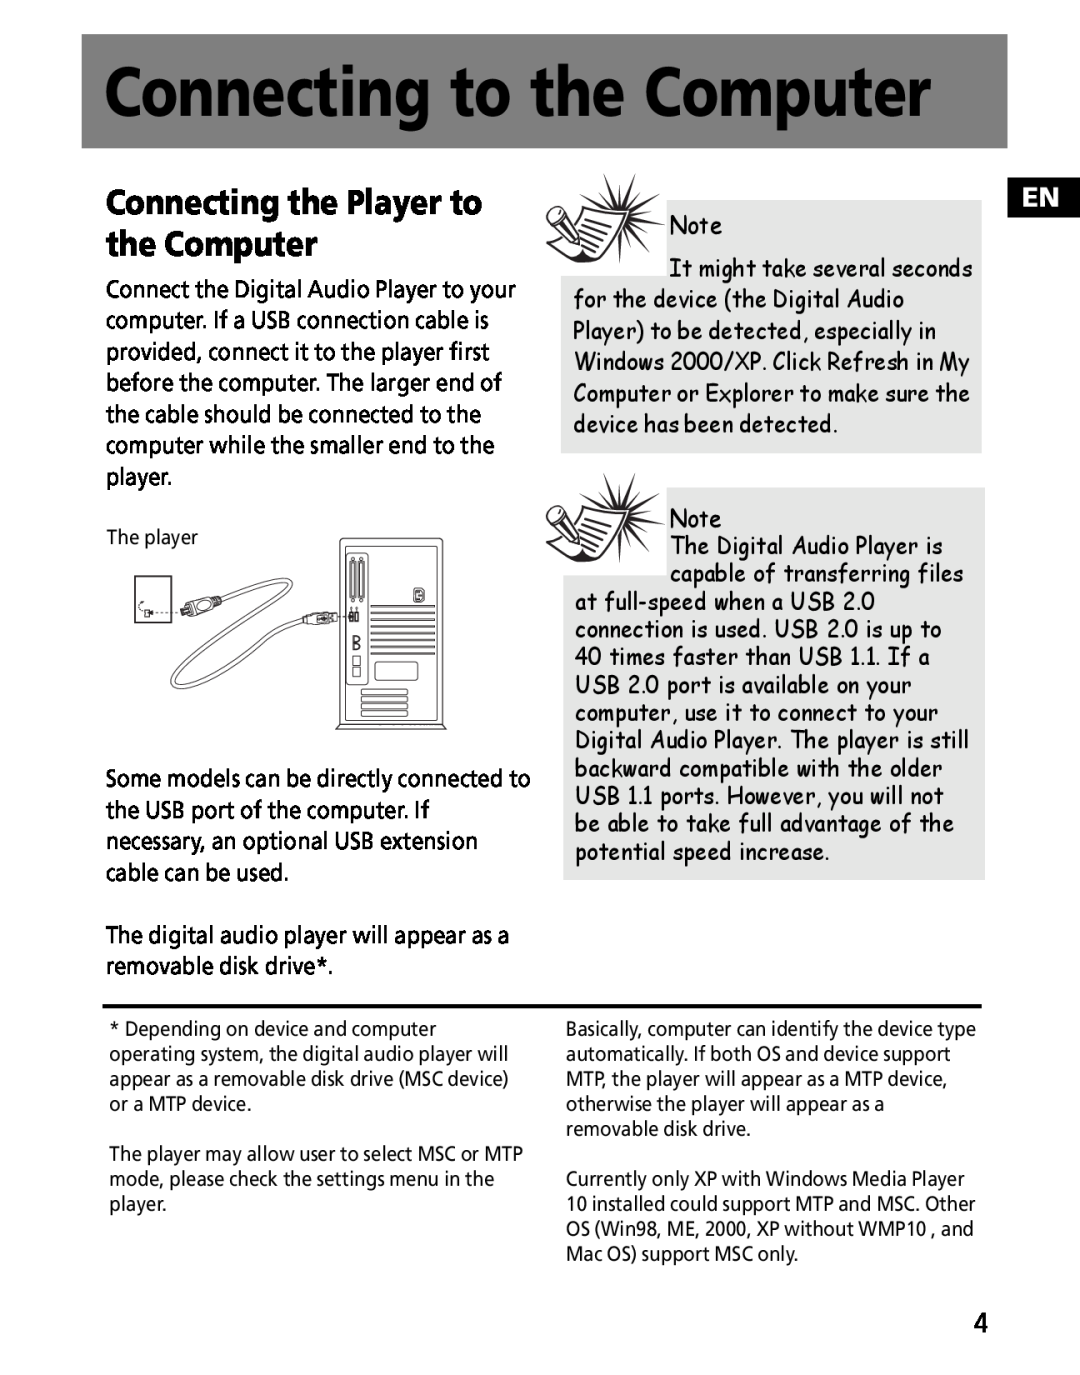 RCA M2011, M2030, M202, M2000, M2001, MC200, MC2011, MC2020 Connecting to the Computer, Connecting the Player to the Computer 